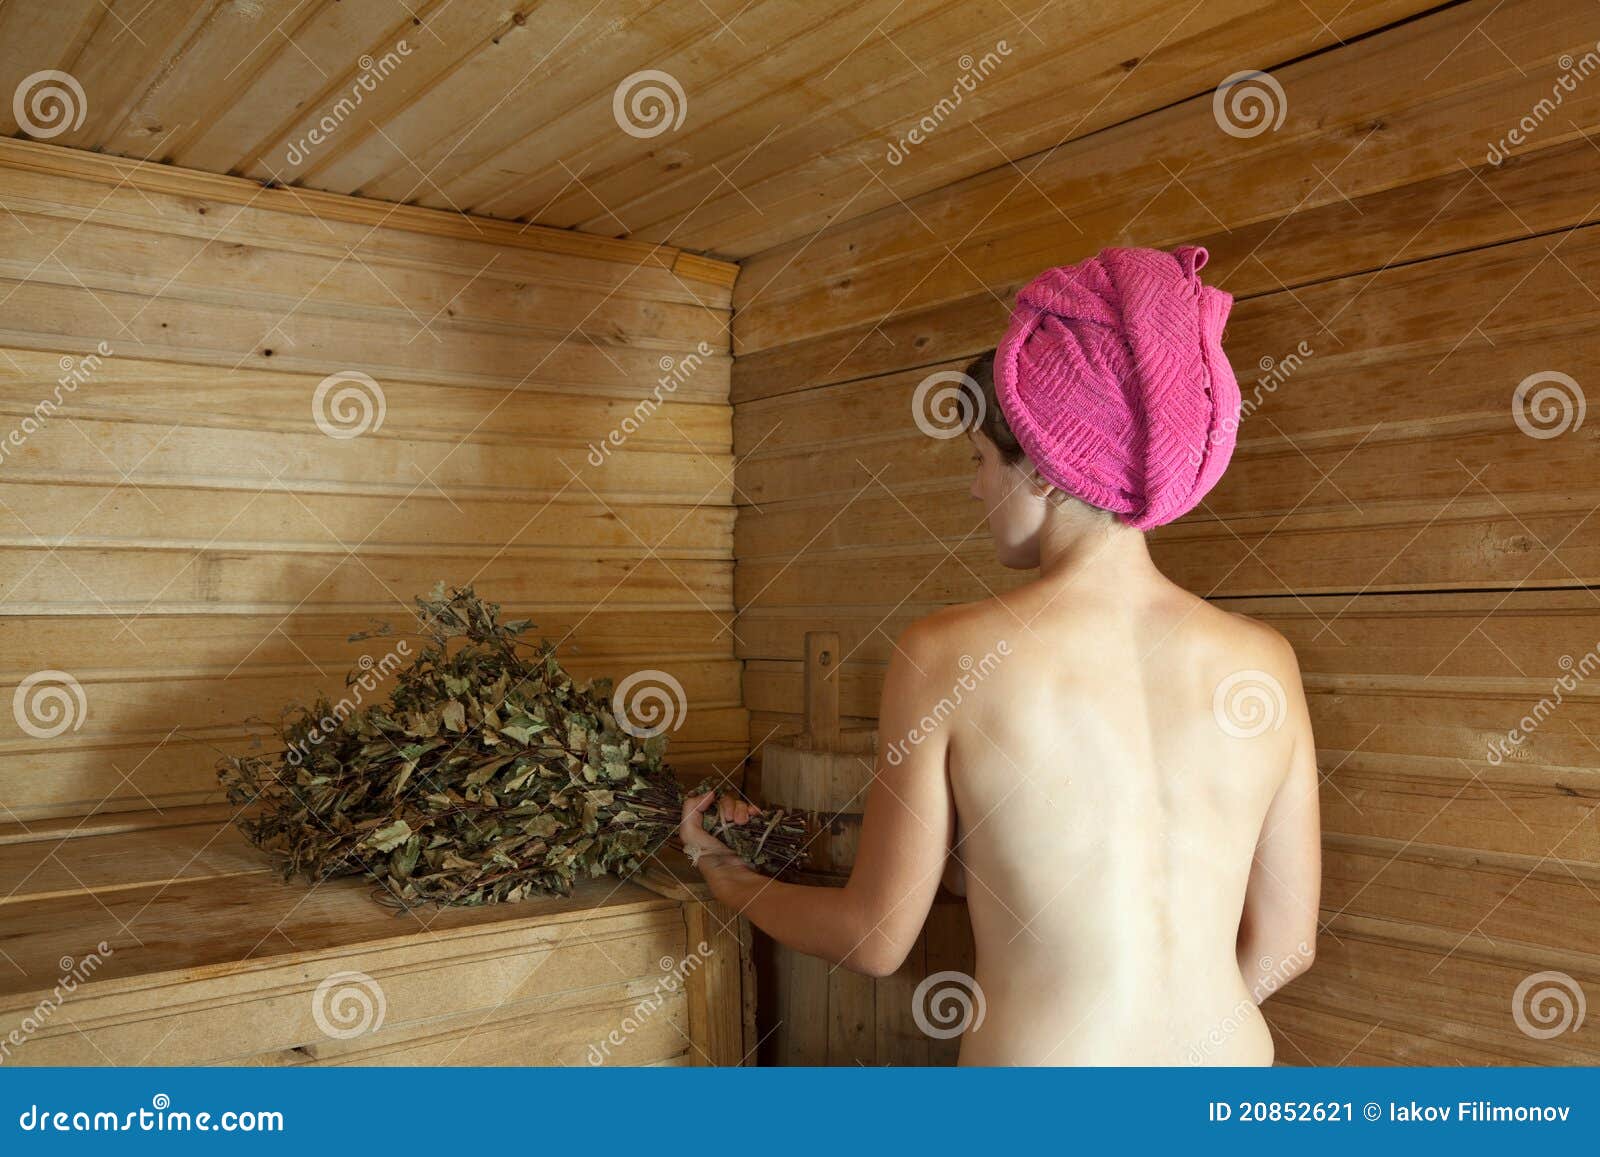 почему в бане моются голыми фото 33